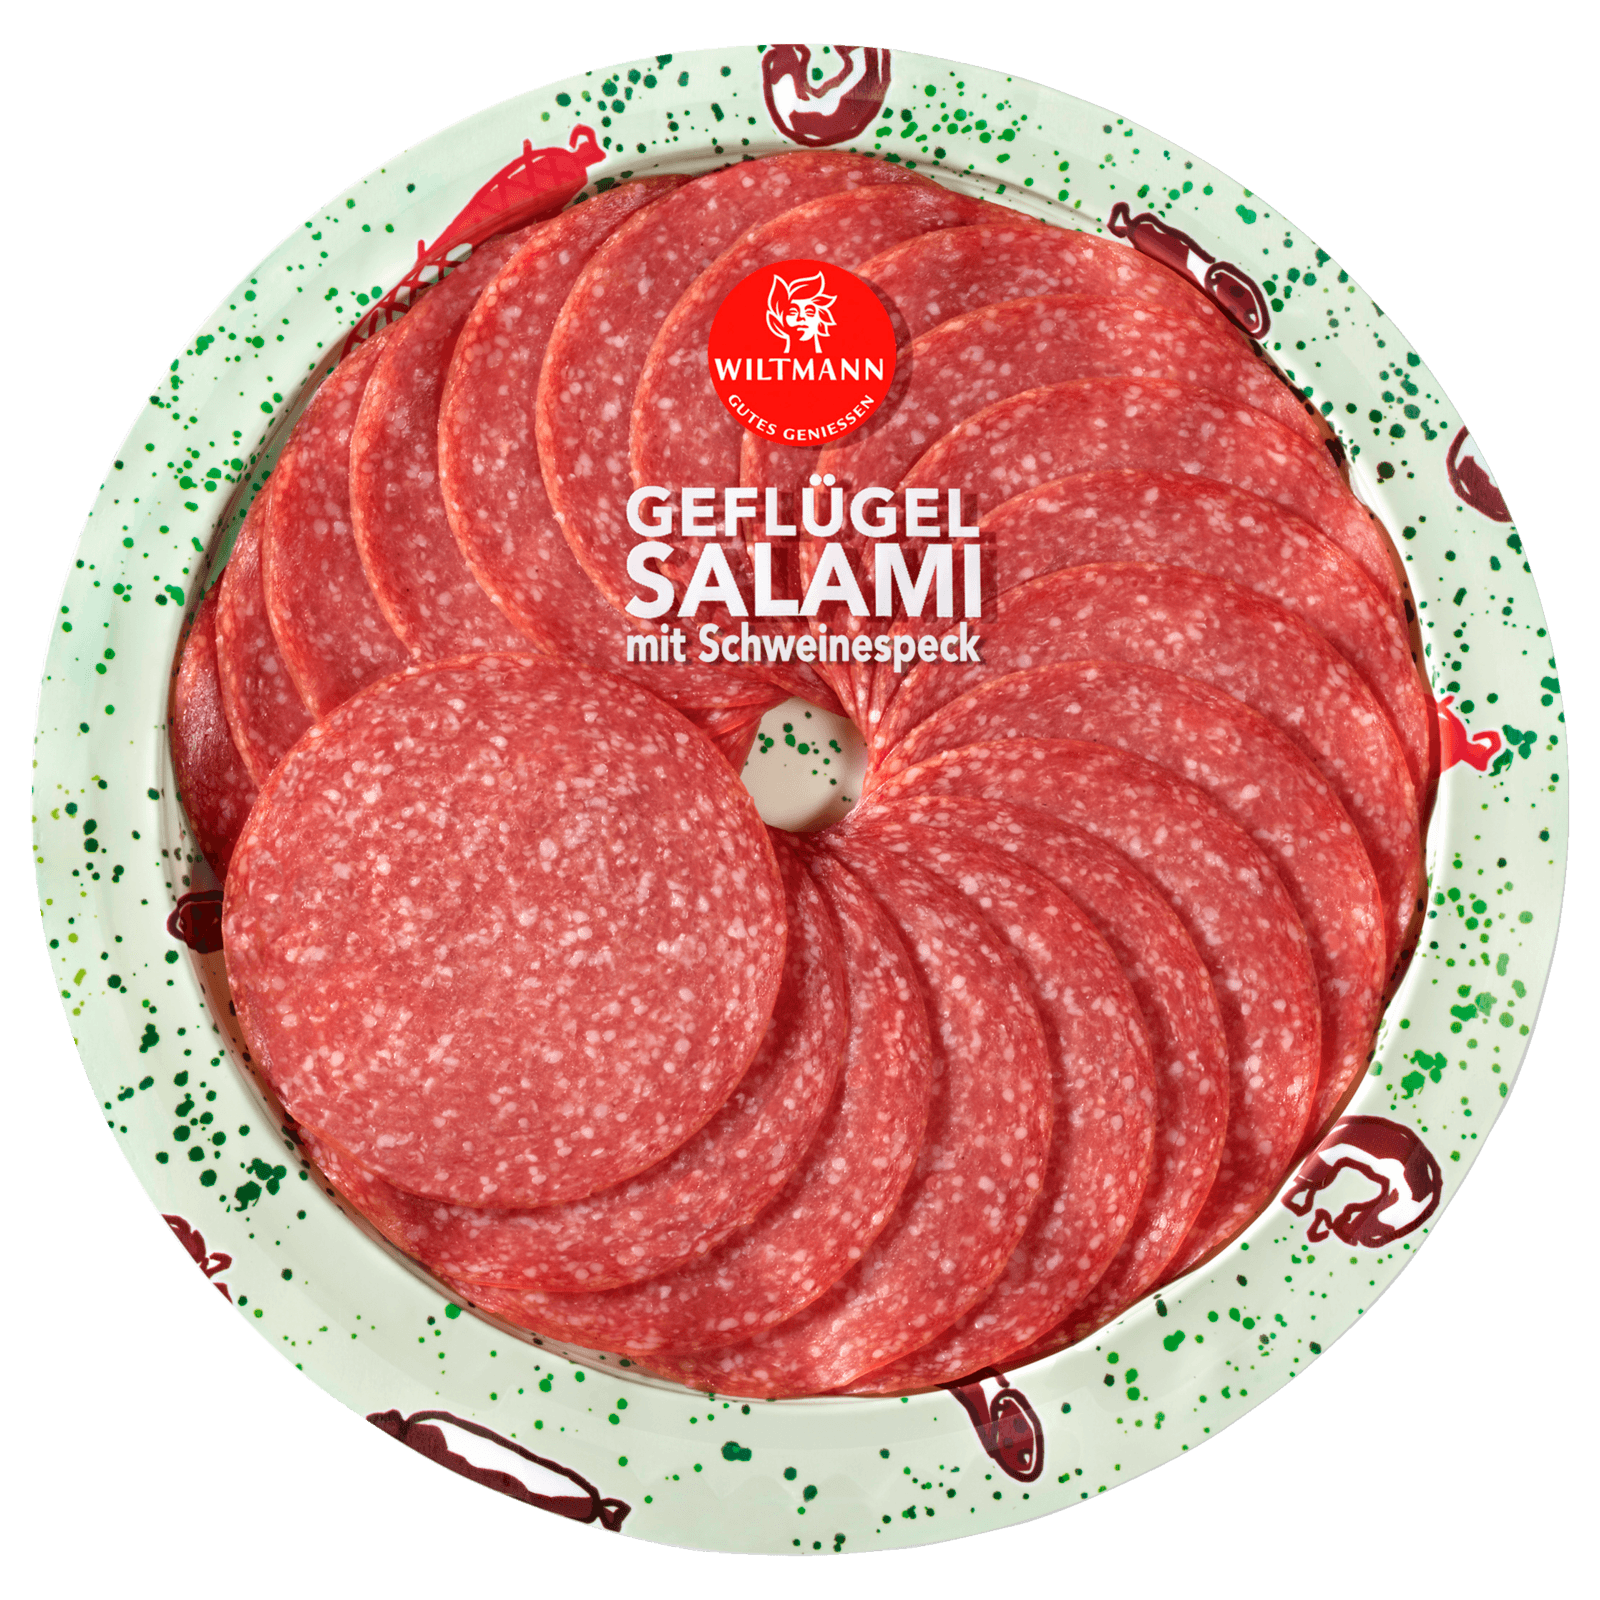 Wiltmann Geflügel Salami 80g  für 1.79 EUR